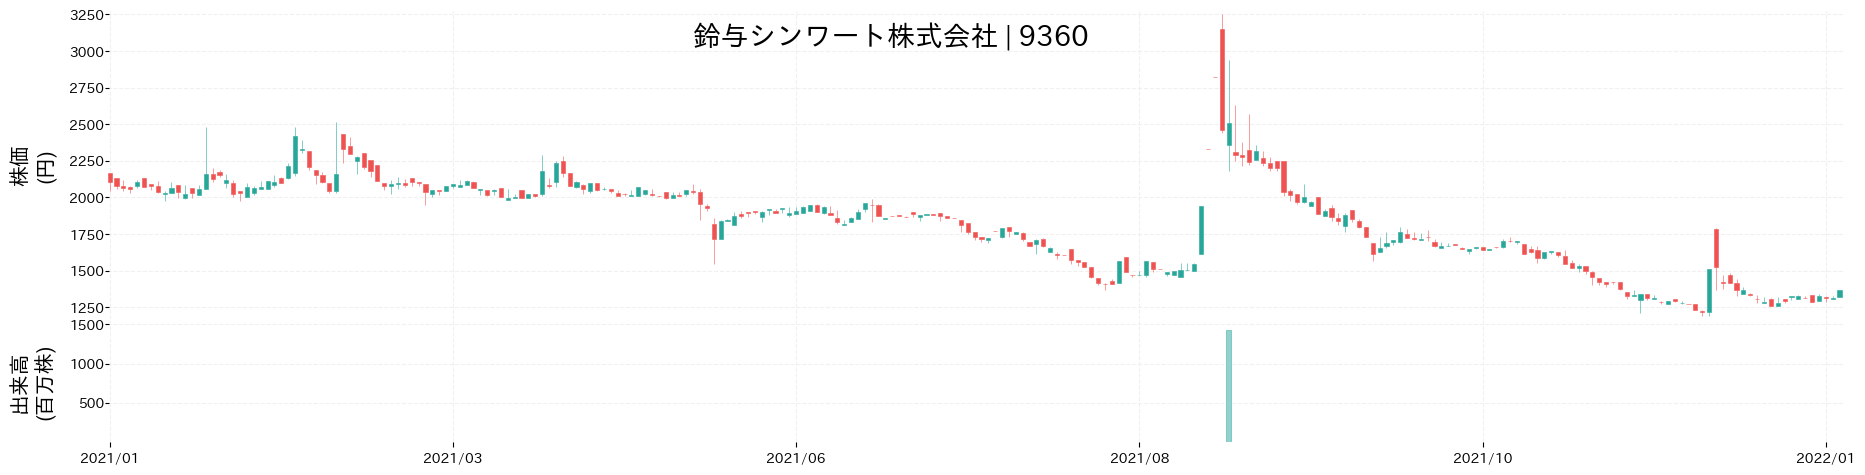 鈴与シンワートの株価推移(2021)